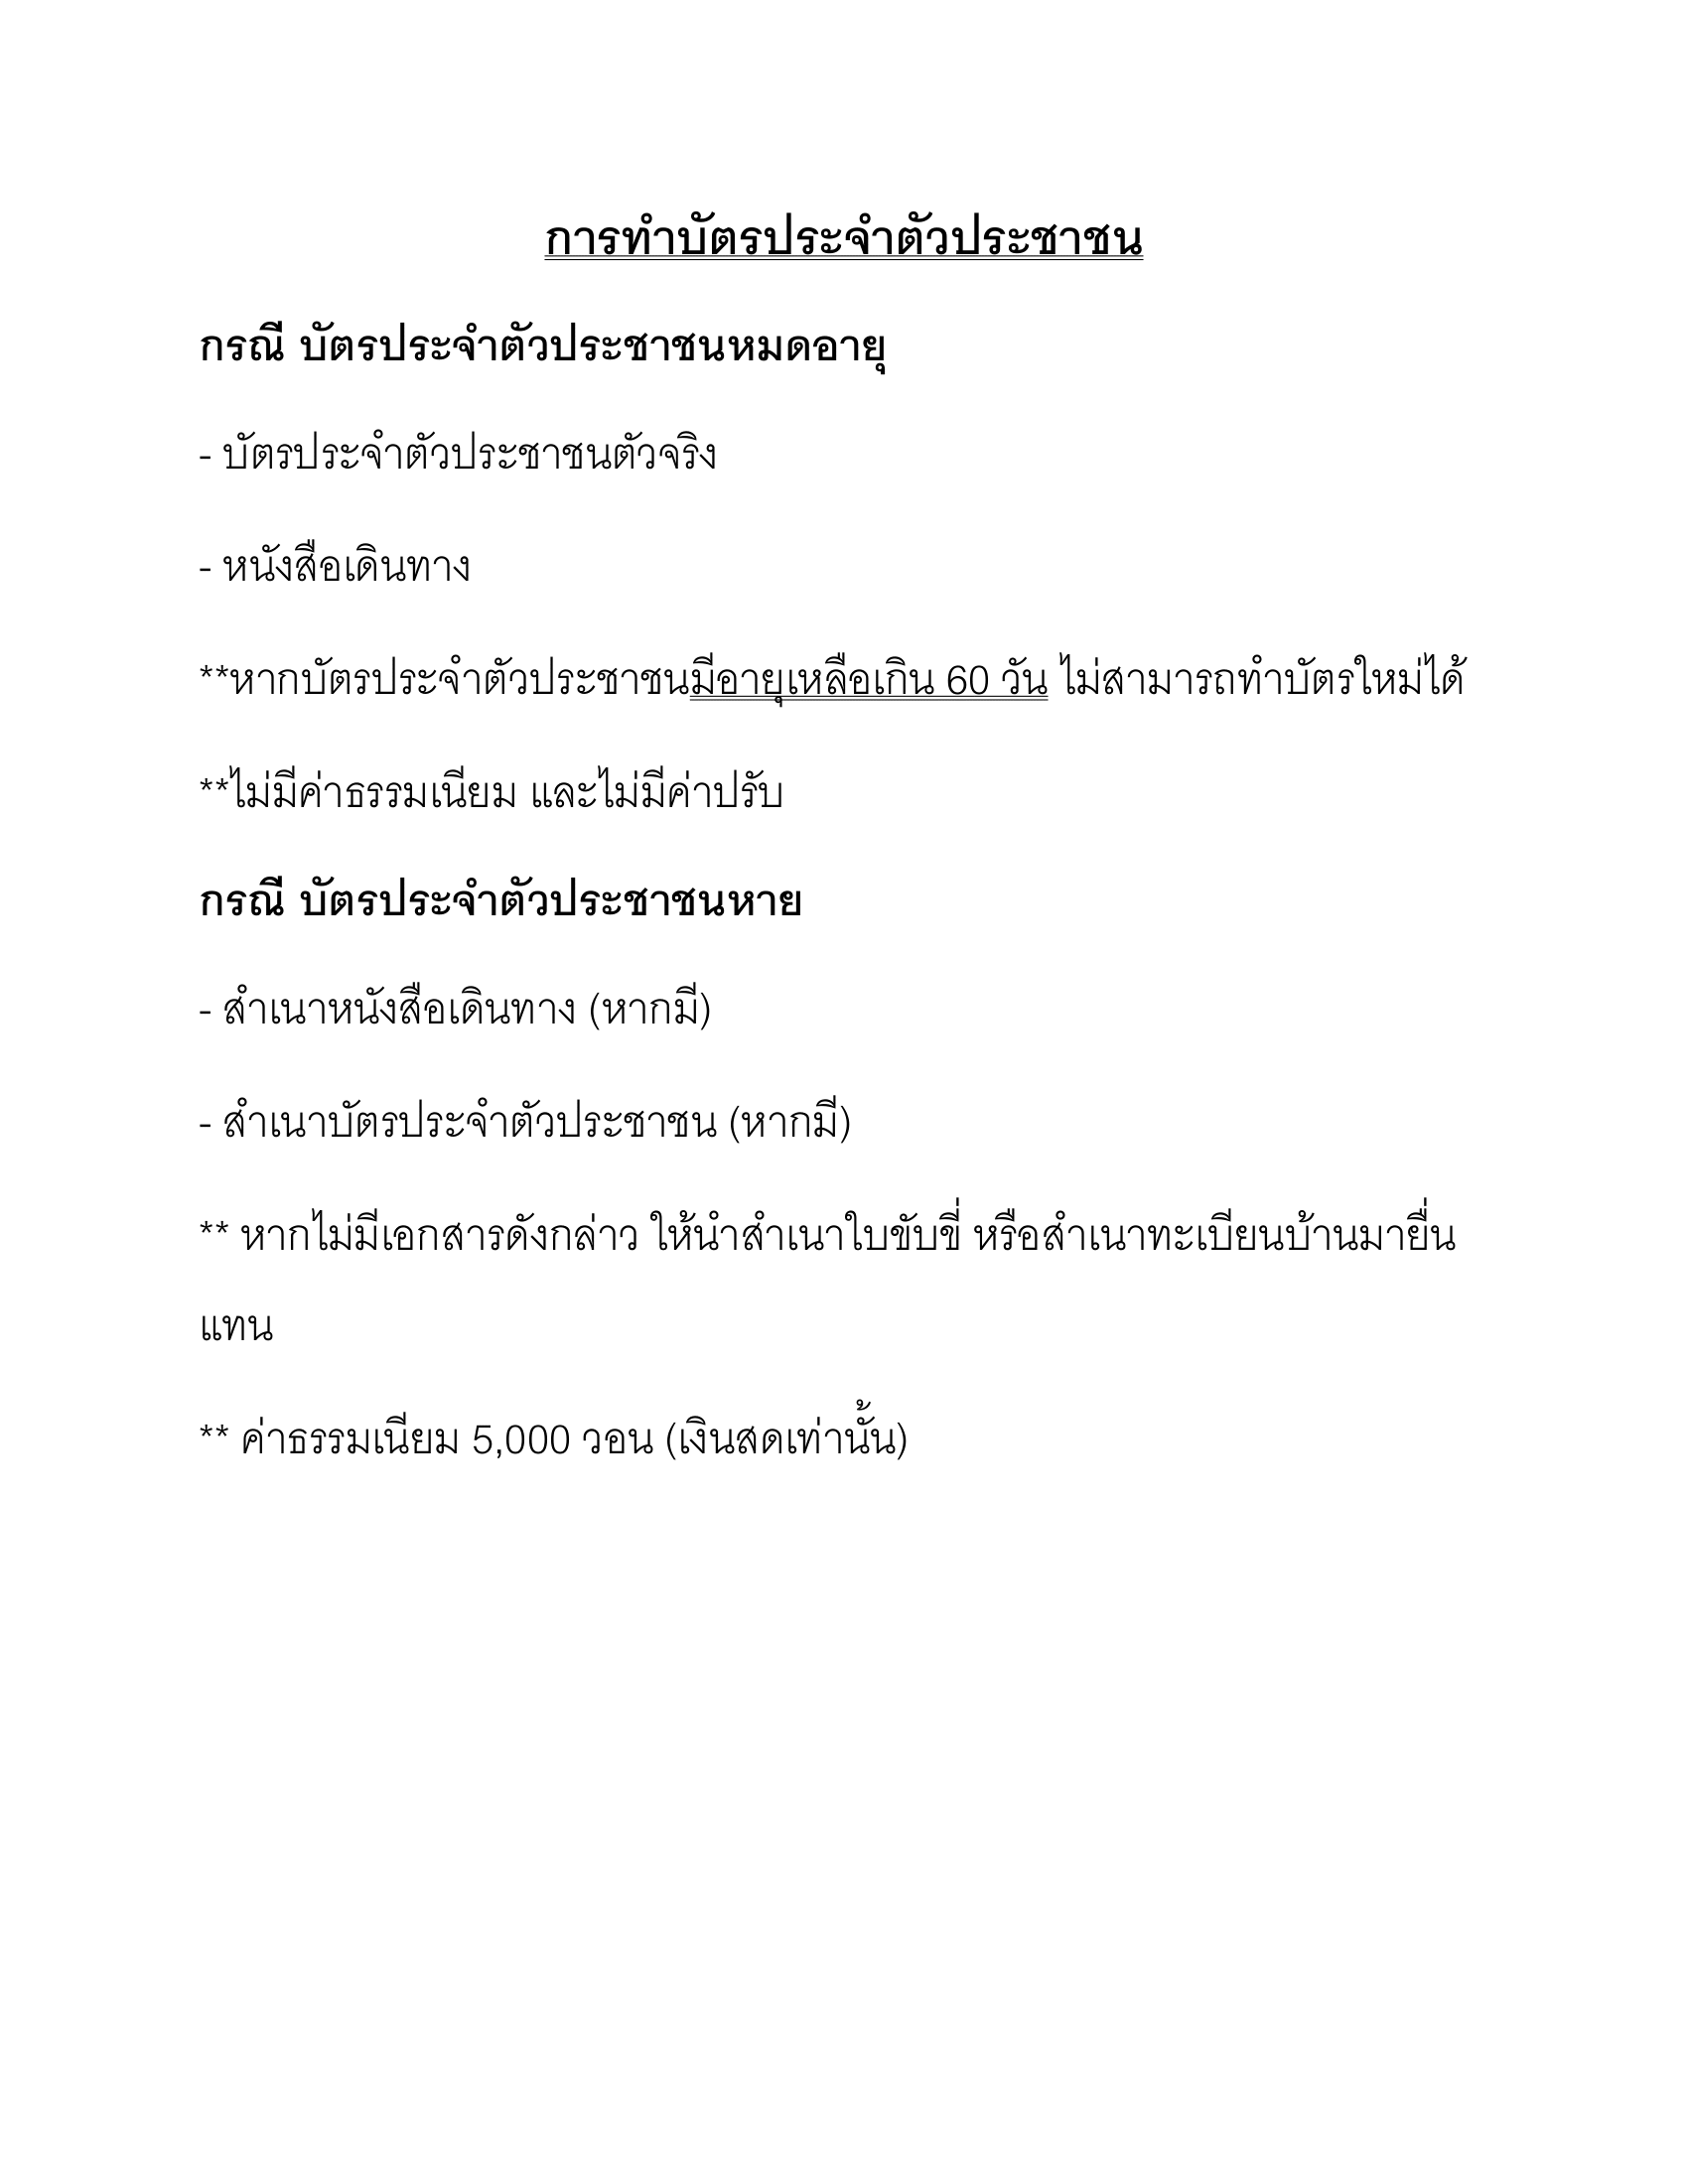 Thai_National_ID_card_18.2.2022-1